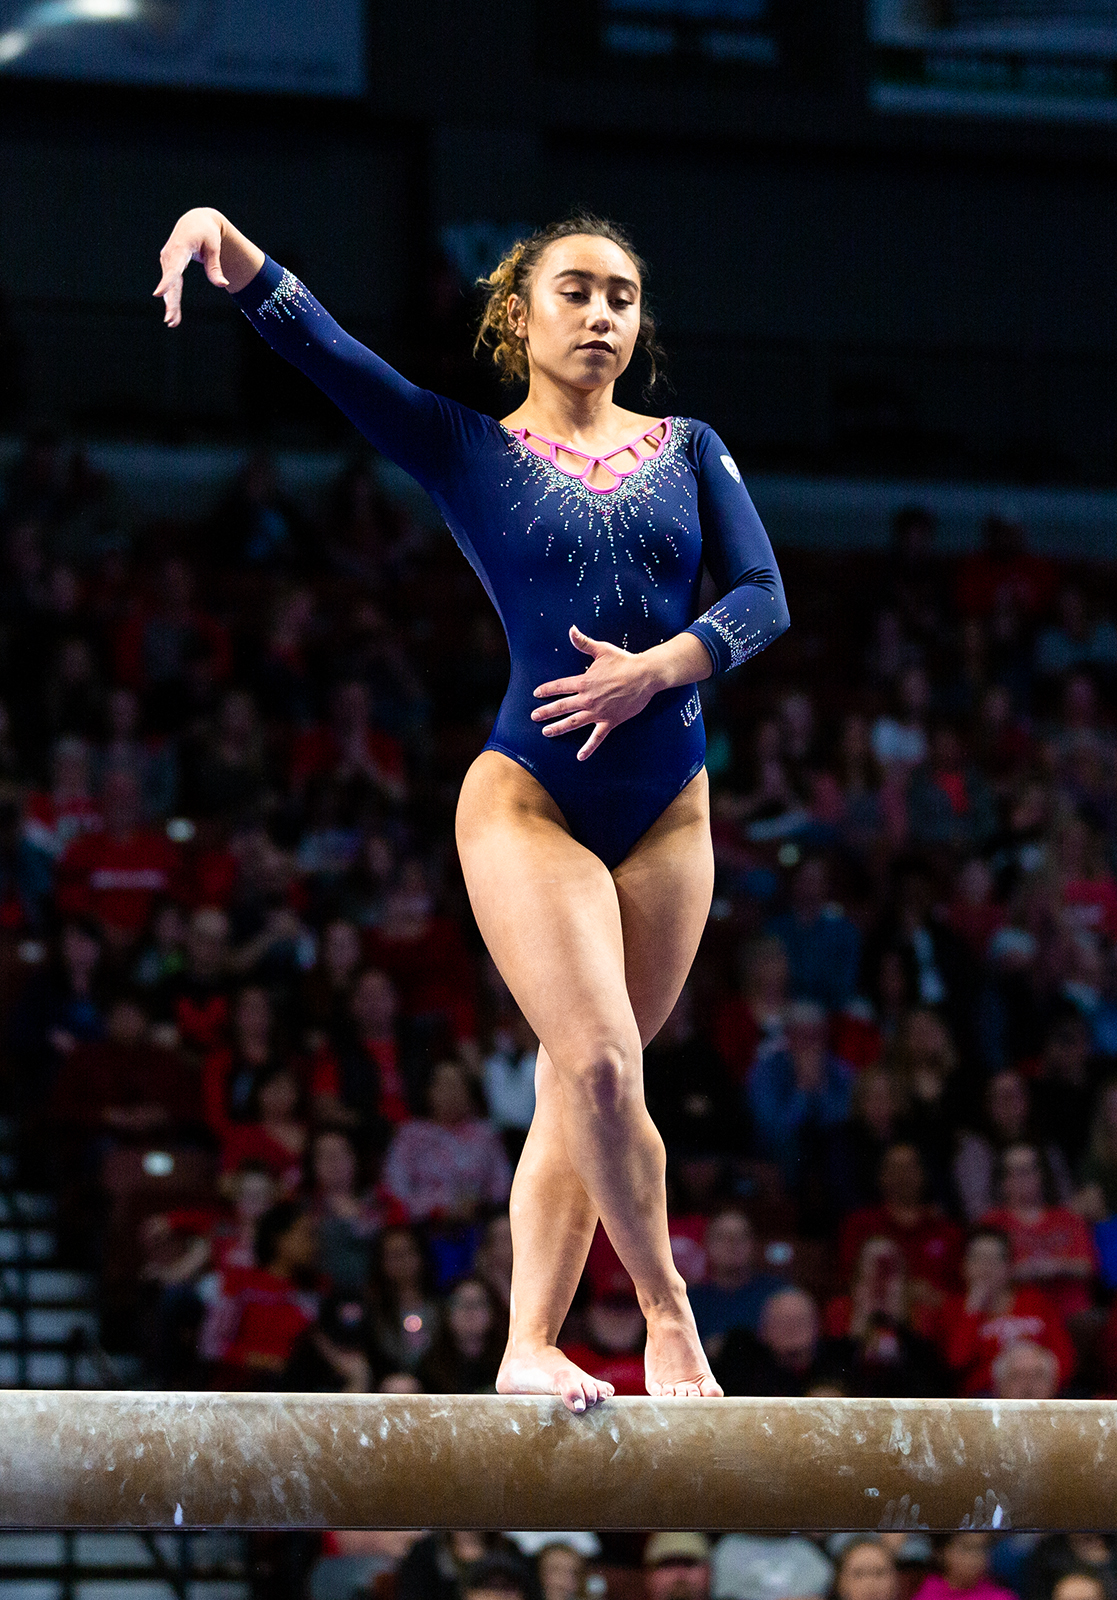 UCLA celebrates at the ESPYS with gymnast Katelyn Ohashi taking home 2 awar...